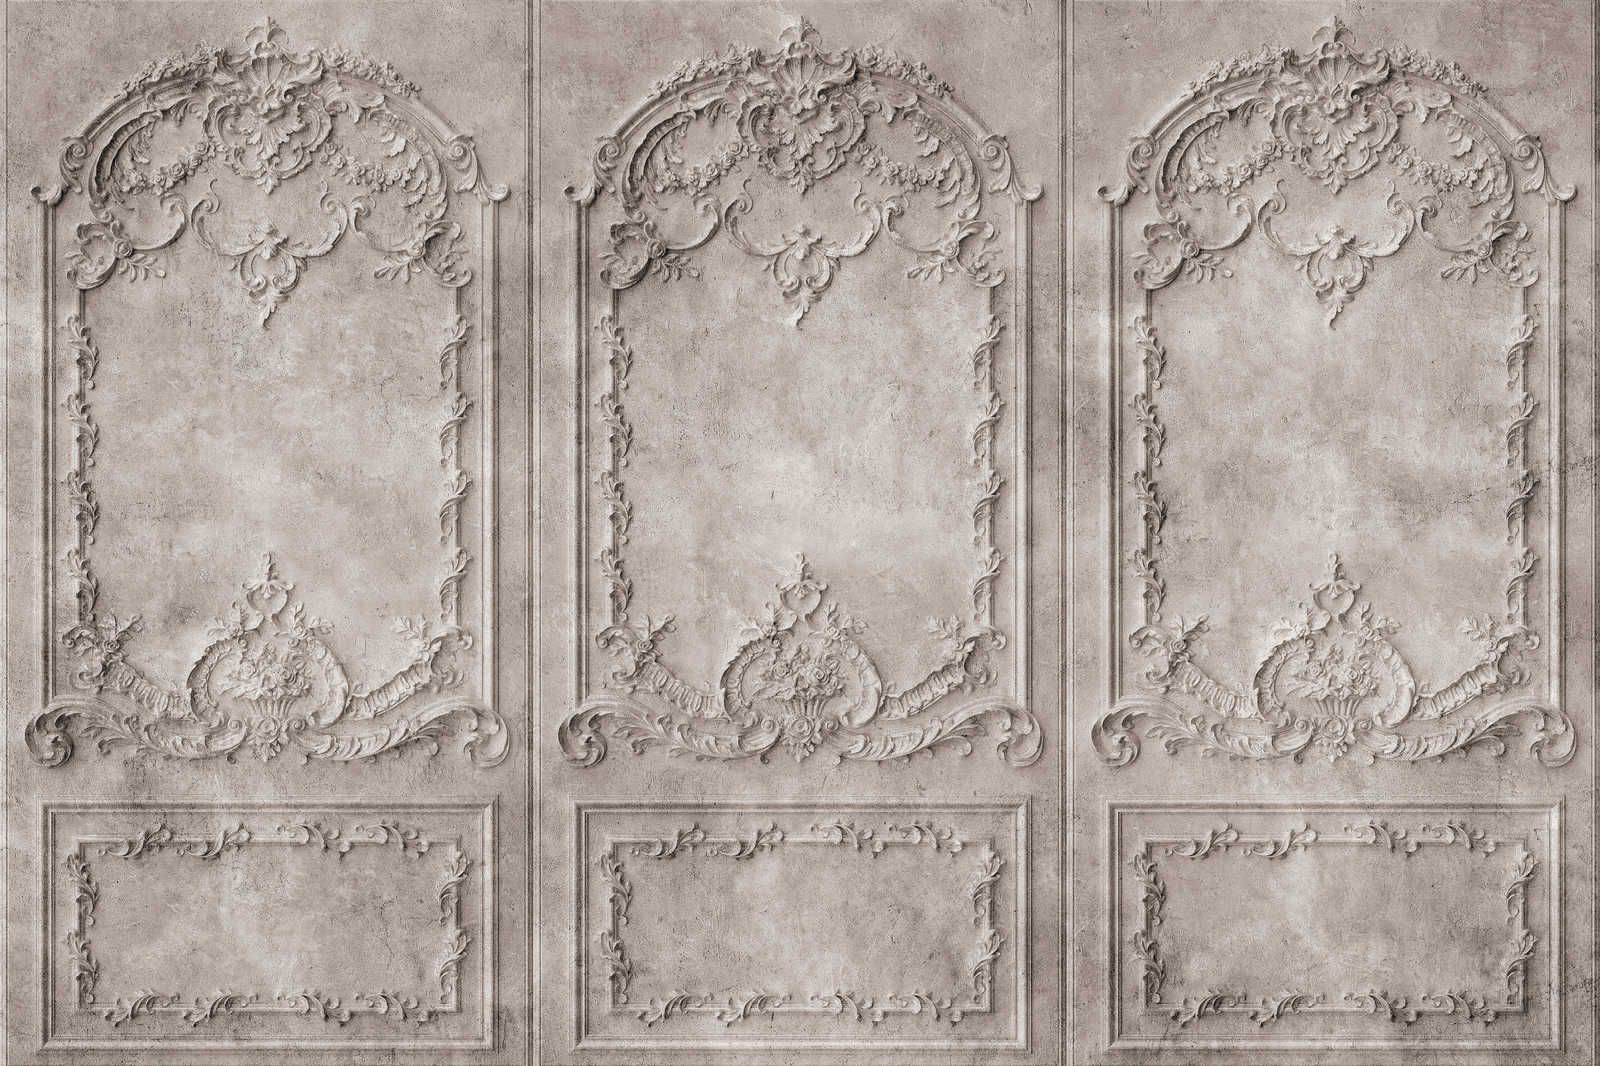             Versailles 1 - Quadro su tela in stile barocco grigio-marrone - 0,90 m x 0,60 m
        